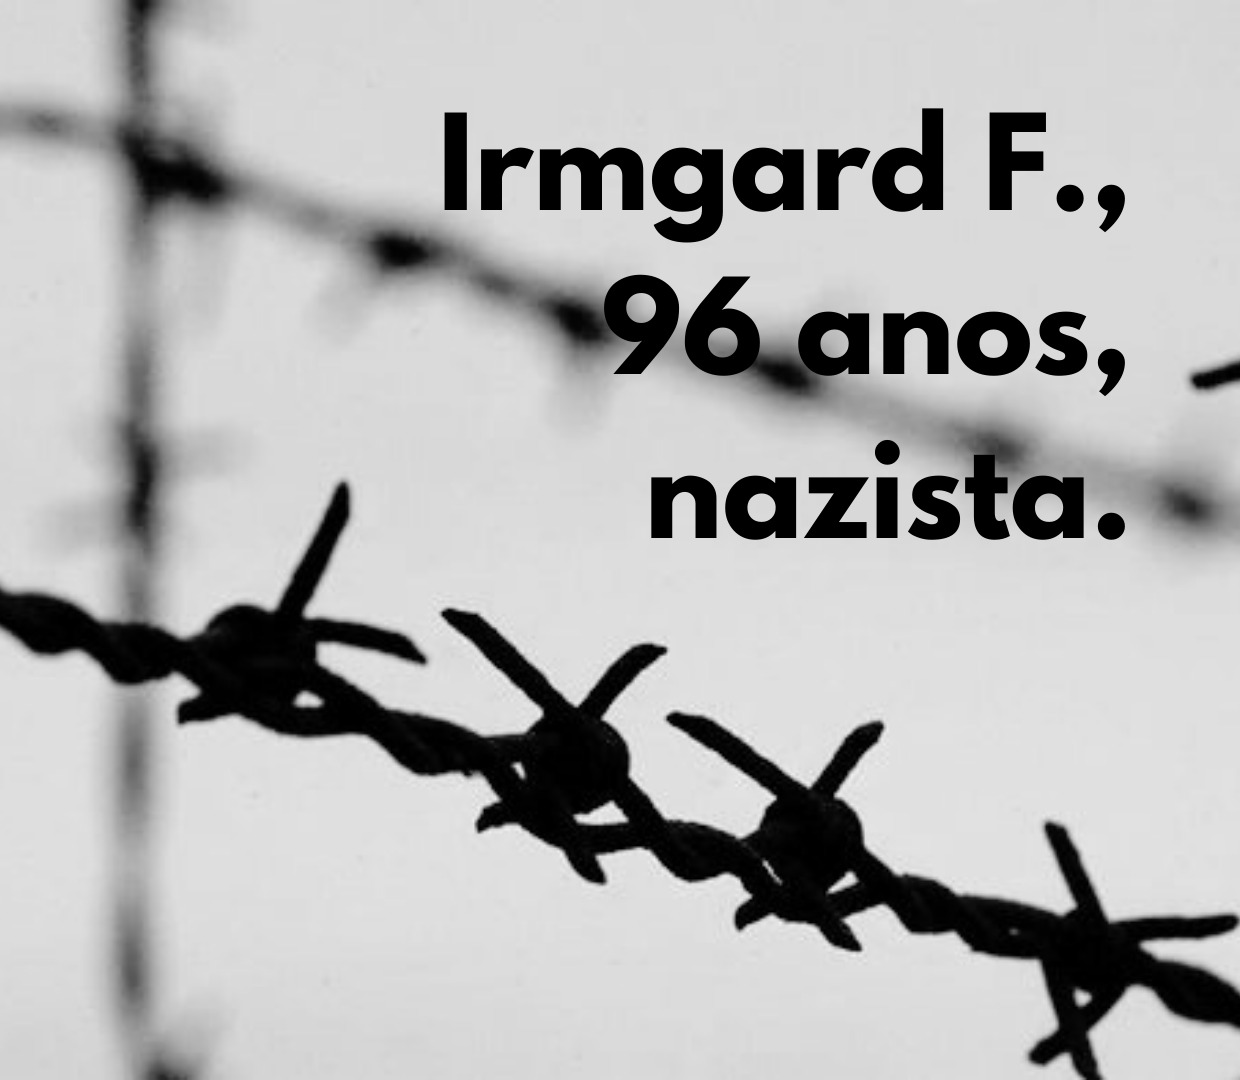 Irmgard F., 96 anos, nazista.